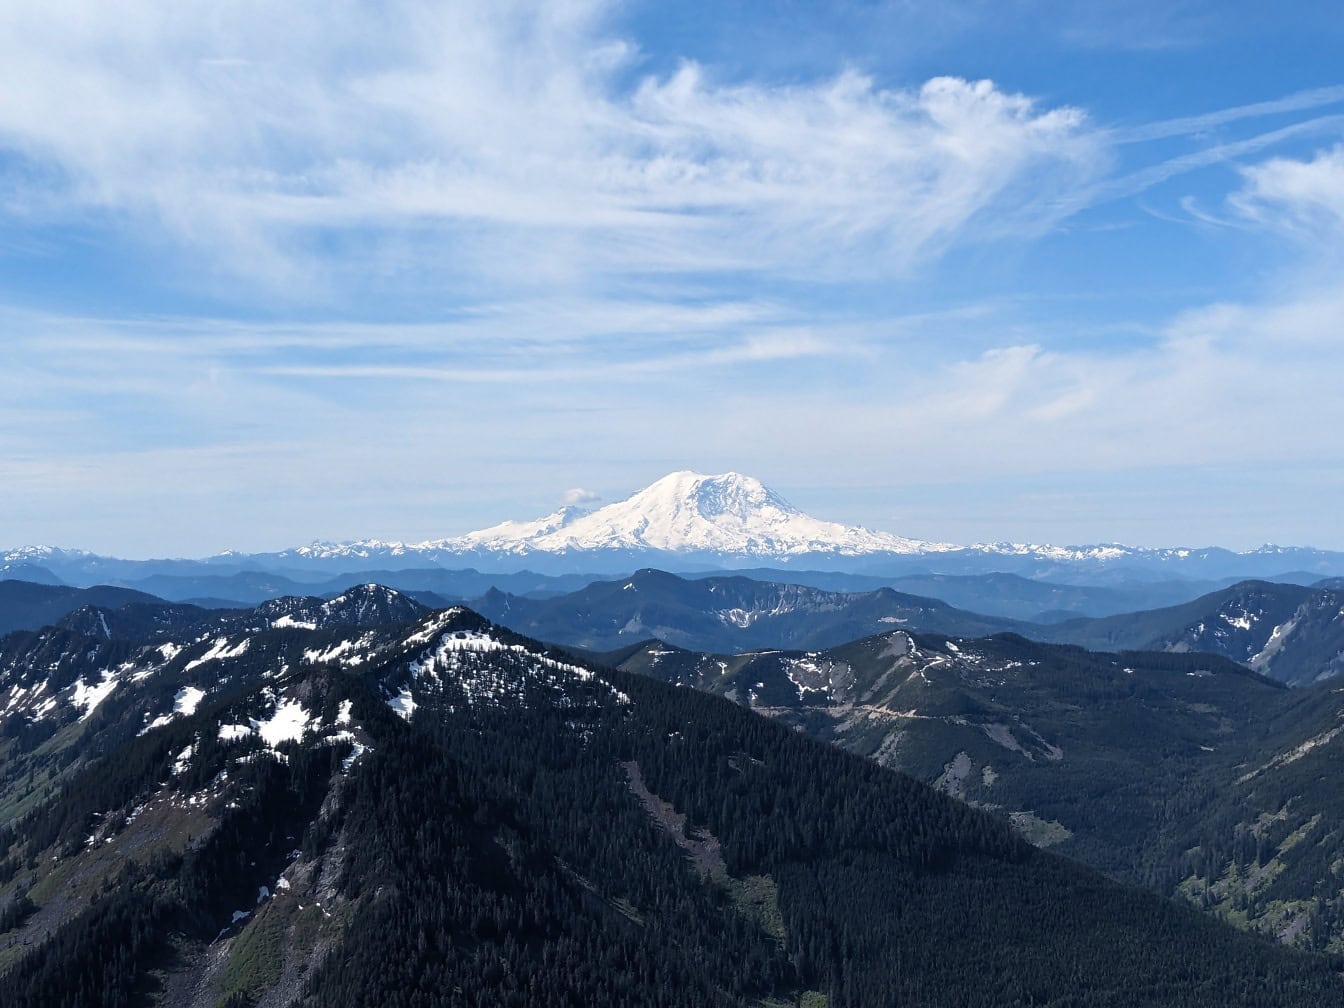 Krajolik planine Rainier s aktivnim vulkanom sa snježnim vrhom u nacionalnom parku Washington